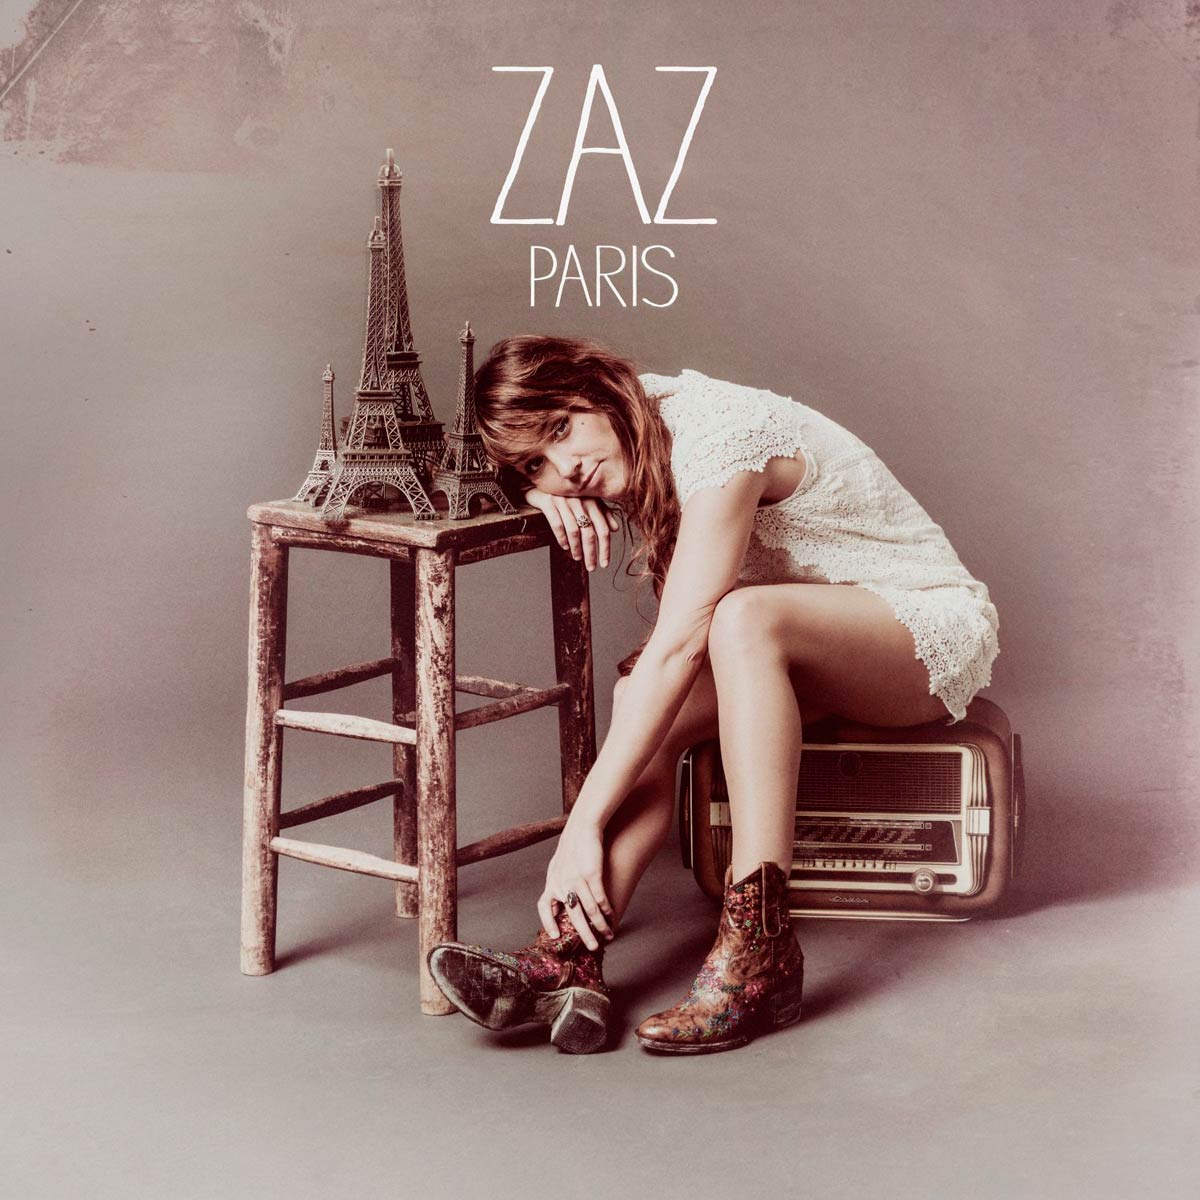 Zaz: Paris, la portada del disco1200 x 1200